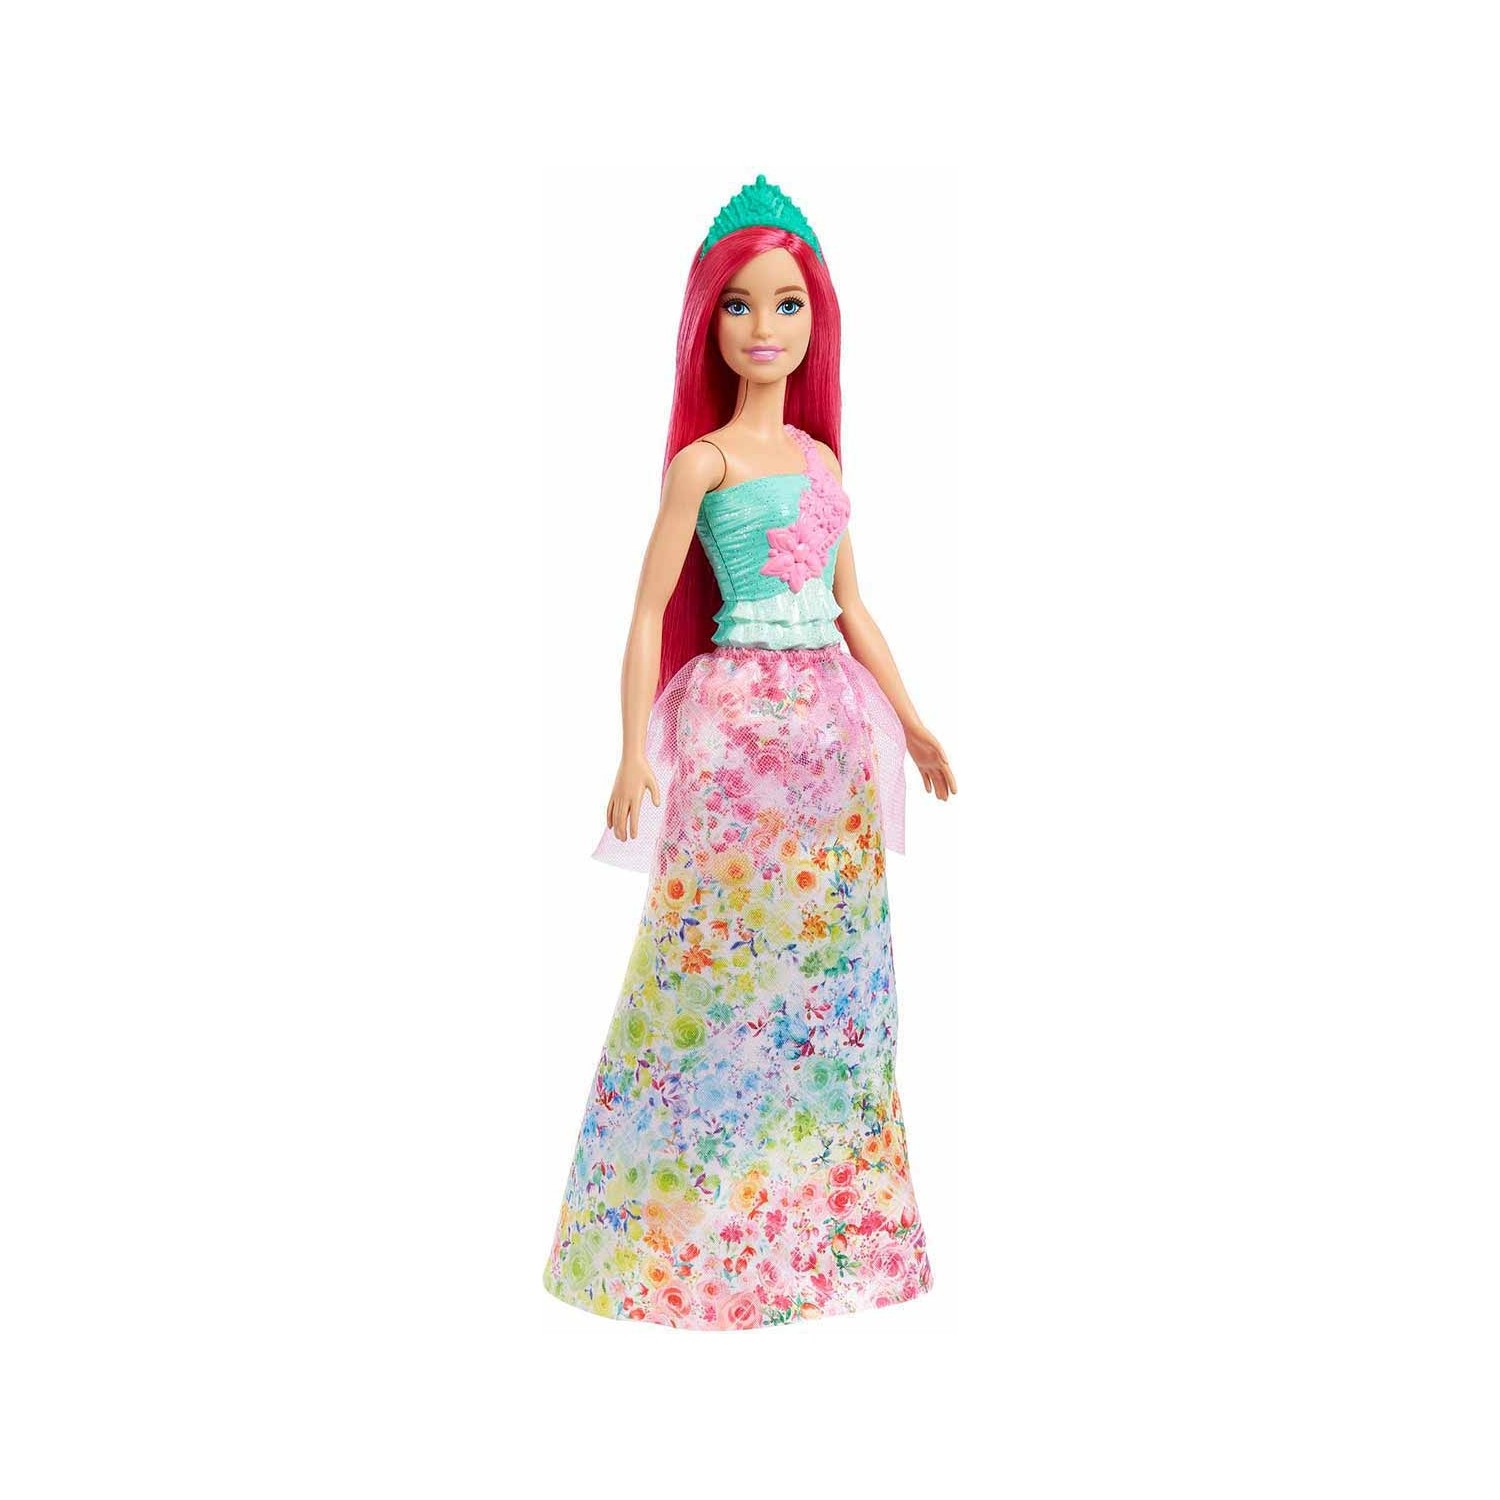 Кукла Barbie Dreamtopia Princess HGR15 кукла barbie dreamtopia princess fjc95